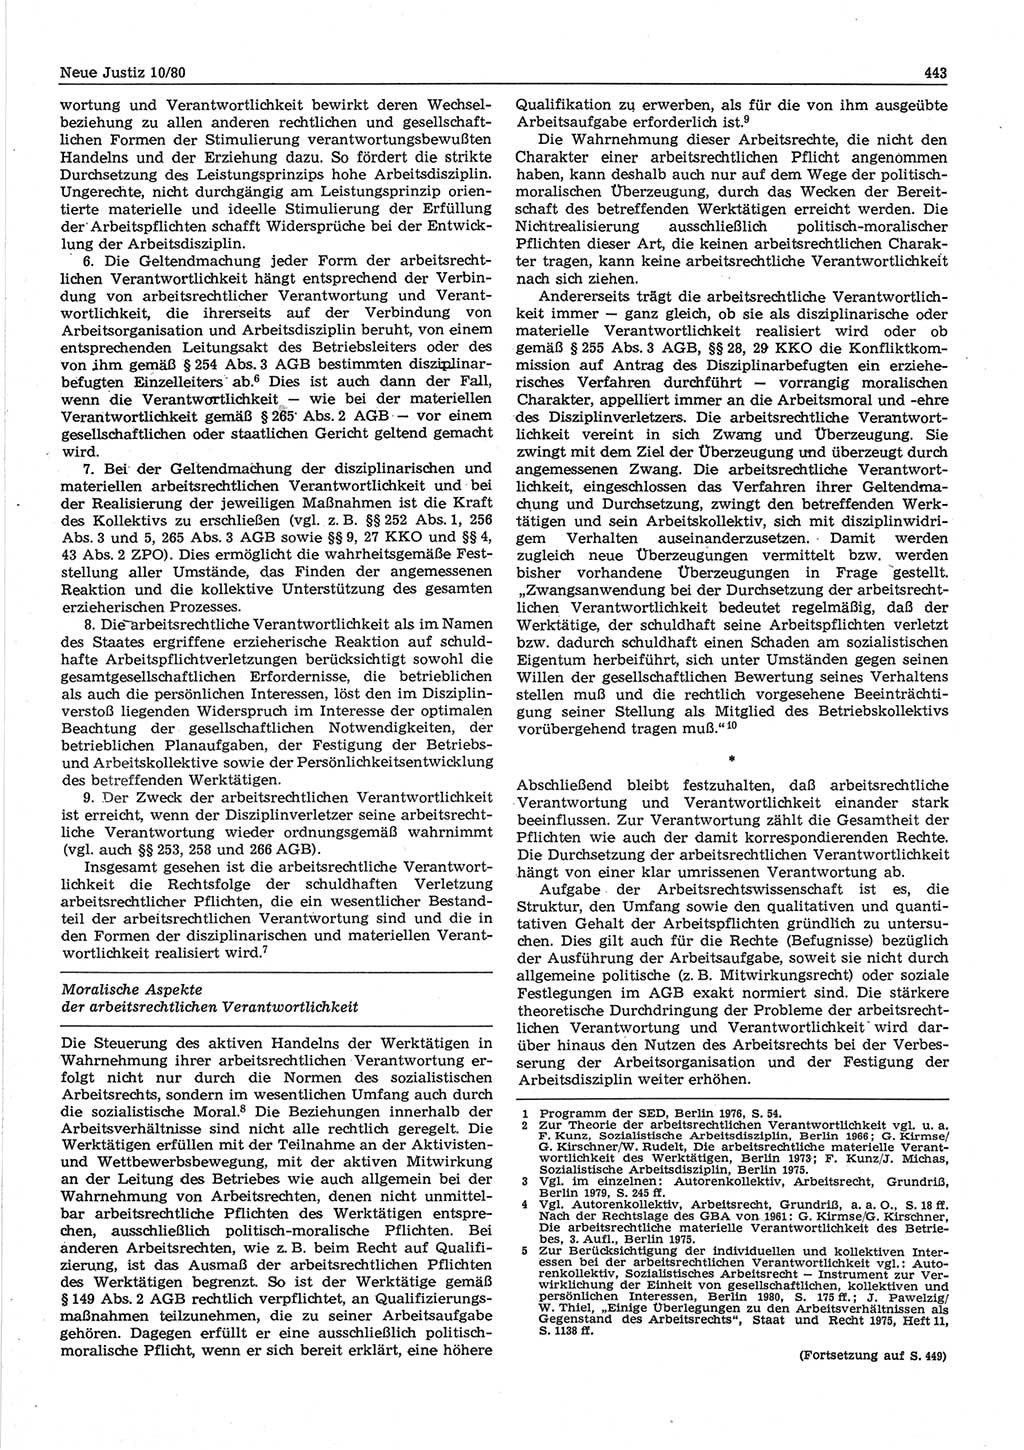 Neue Justiz (NJ), Zeitschrift für sozialistisches Recht und Gesetzlichkeit [Deutsche Demokratische Republik (DDR)], 34. Jahrgang 1980, Seite 443 (NJ DDR 1980, S. 443)